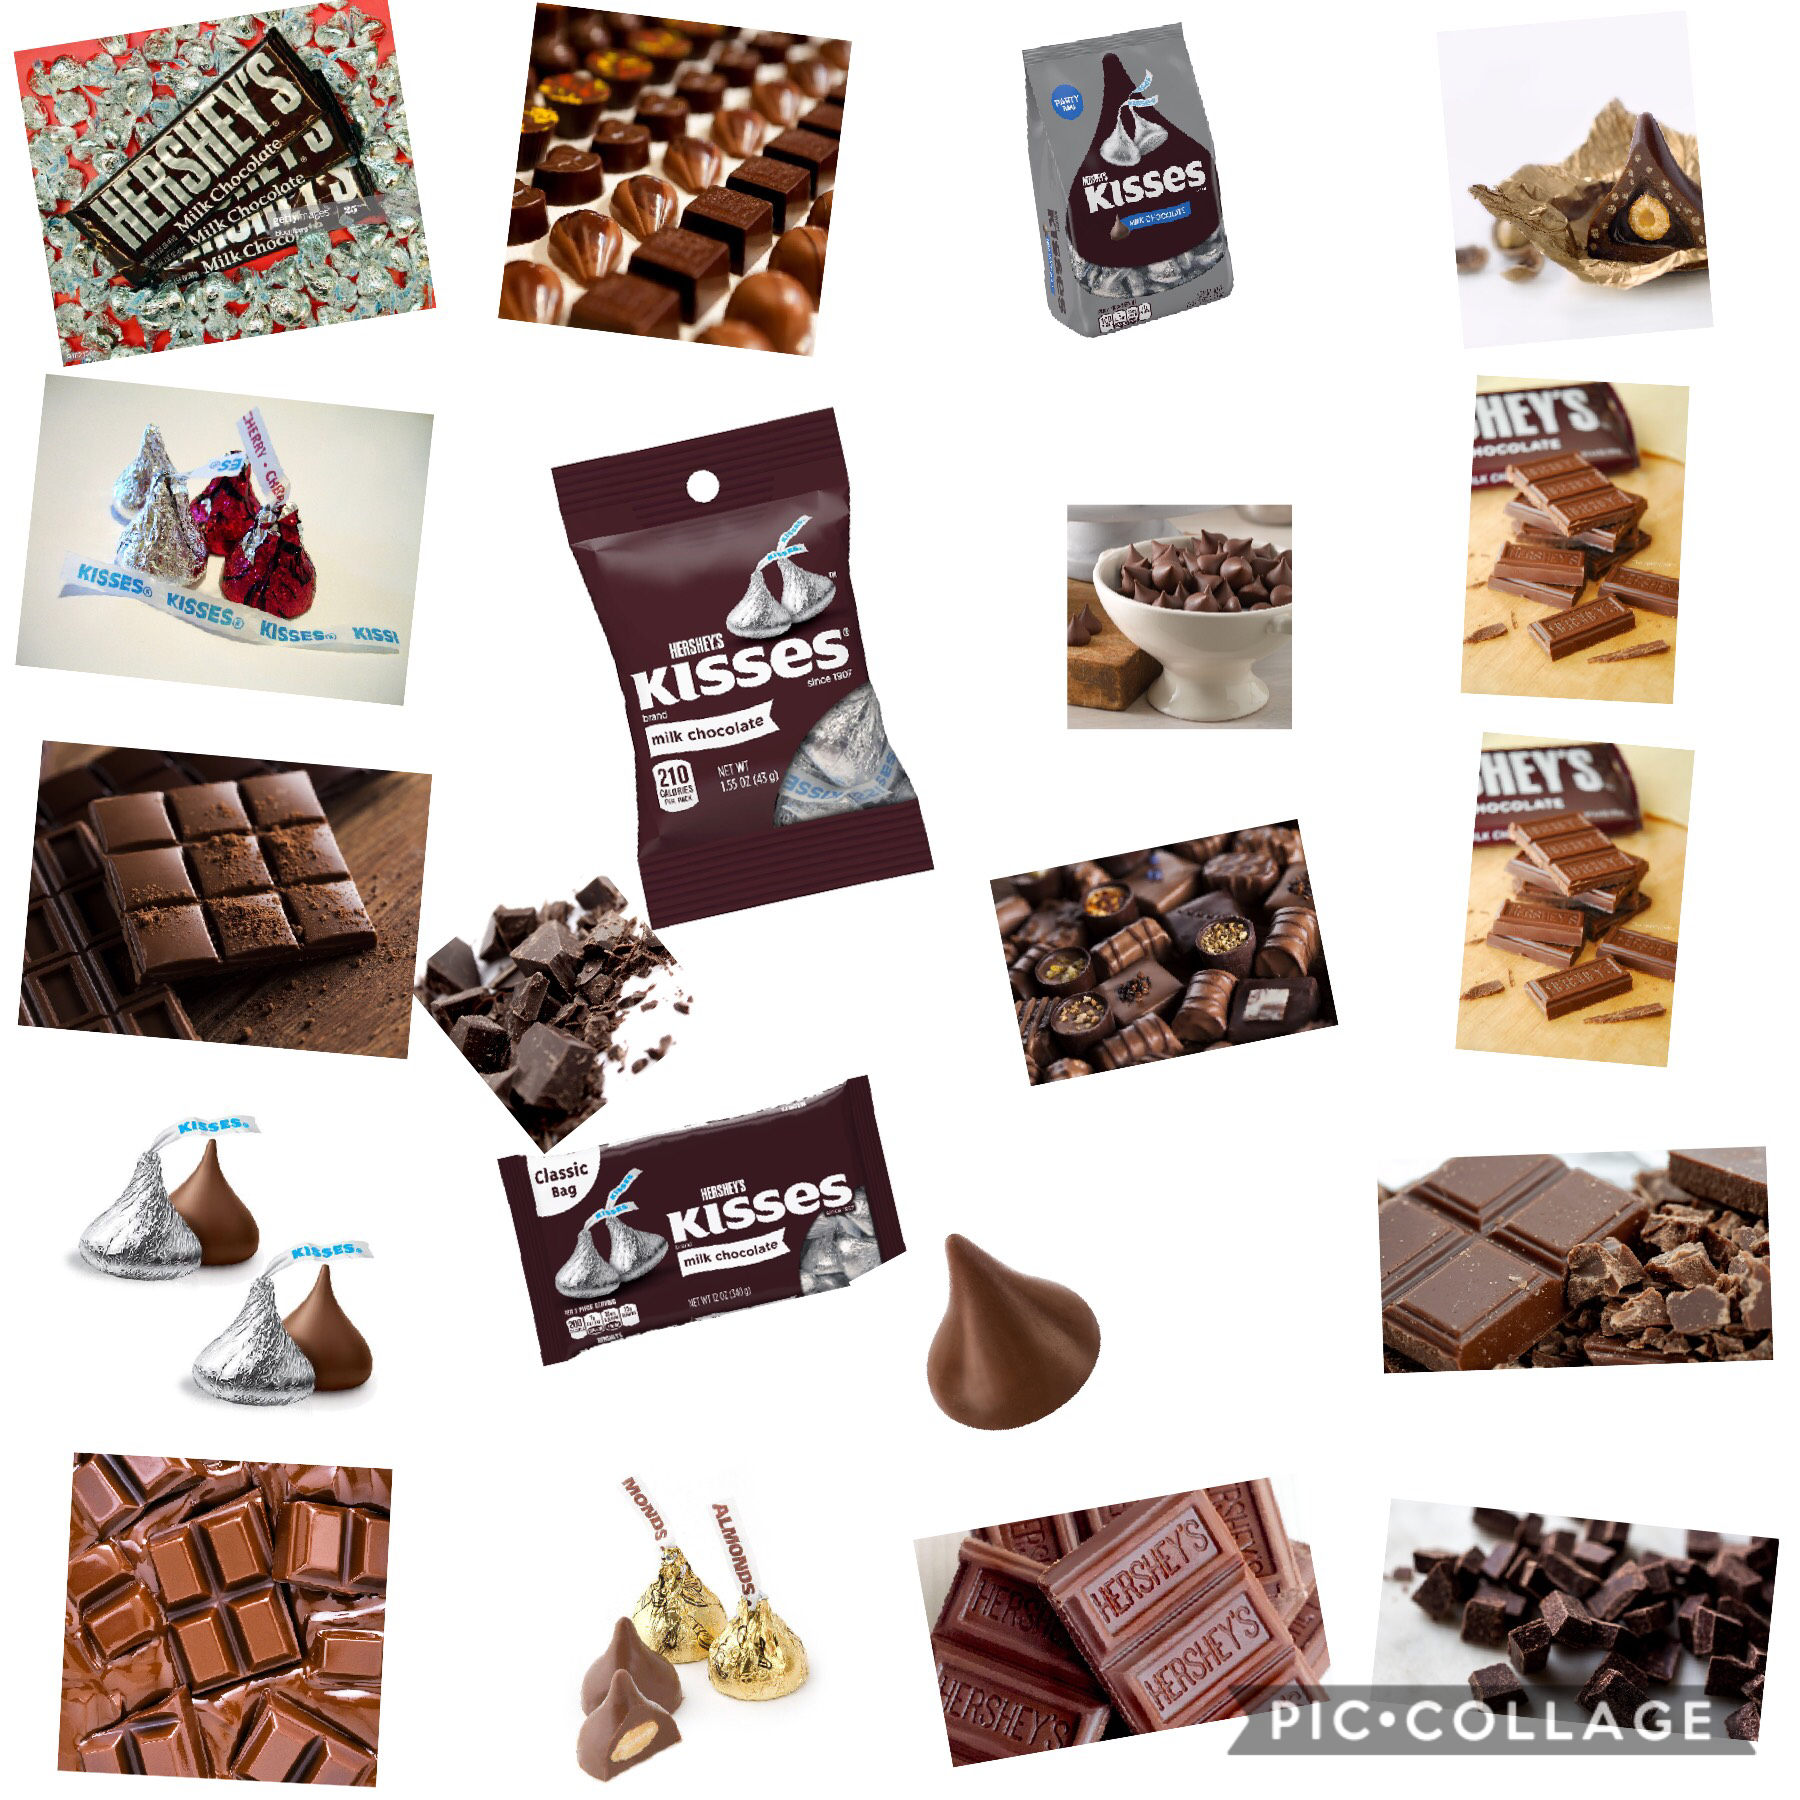 Do you like chocolate?🍫🍫🍫🍫🍫🍫🍫🍫🍫🍫🍫🍫🍫🍫🍫🍫🍫🍫🍫🍫🍫🍫🍫🍫🍫🍫🍫🍫🍫🍫🍫🍫🍫🍫🍫🍫🍫🍫🍫🍫🍫🍫🍫🍫🍫🍫🍫🍫🍫🍫🍫🍫🍫🍫🍫🍫🍫🍫🍫🍫🍫🍫🍫🍫🍫🍫🍫🍫🍫🍫🍫🍫🍫🍫🍫🍫🍫🍫🍫🍫🍫🍫🍫🍫🍫🍫🍫🍫🍫🍫🍫🍫🍫🍫🍫🍫🍫🍫🍫🍫🍫🍫🍫🍫🍫🍫🍫🍫🍫🍫🍫🍫🍫🍫🍫🍫🍫🍫🍫🍫🍫🍫🍫🍫🍫🍫🍫🍫🍫🍫🍫🍫🍫🍫🍫🍫🍫🍫🍫🍫🍫🍫